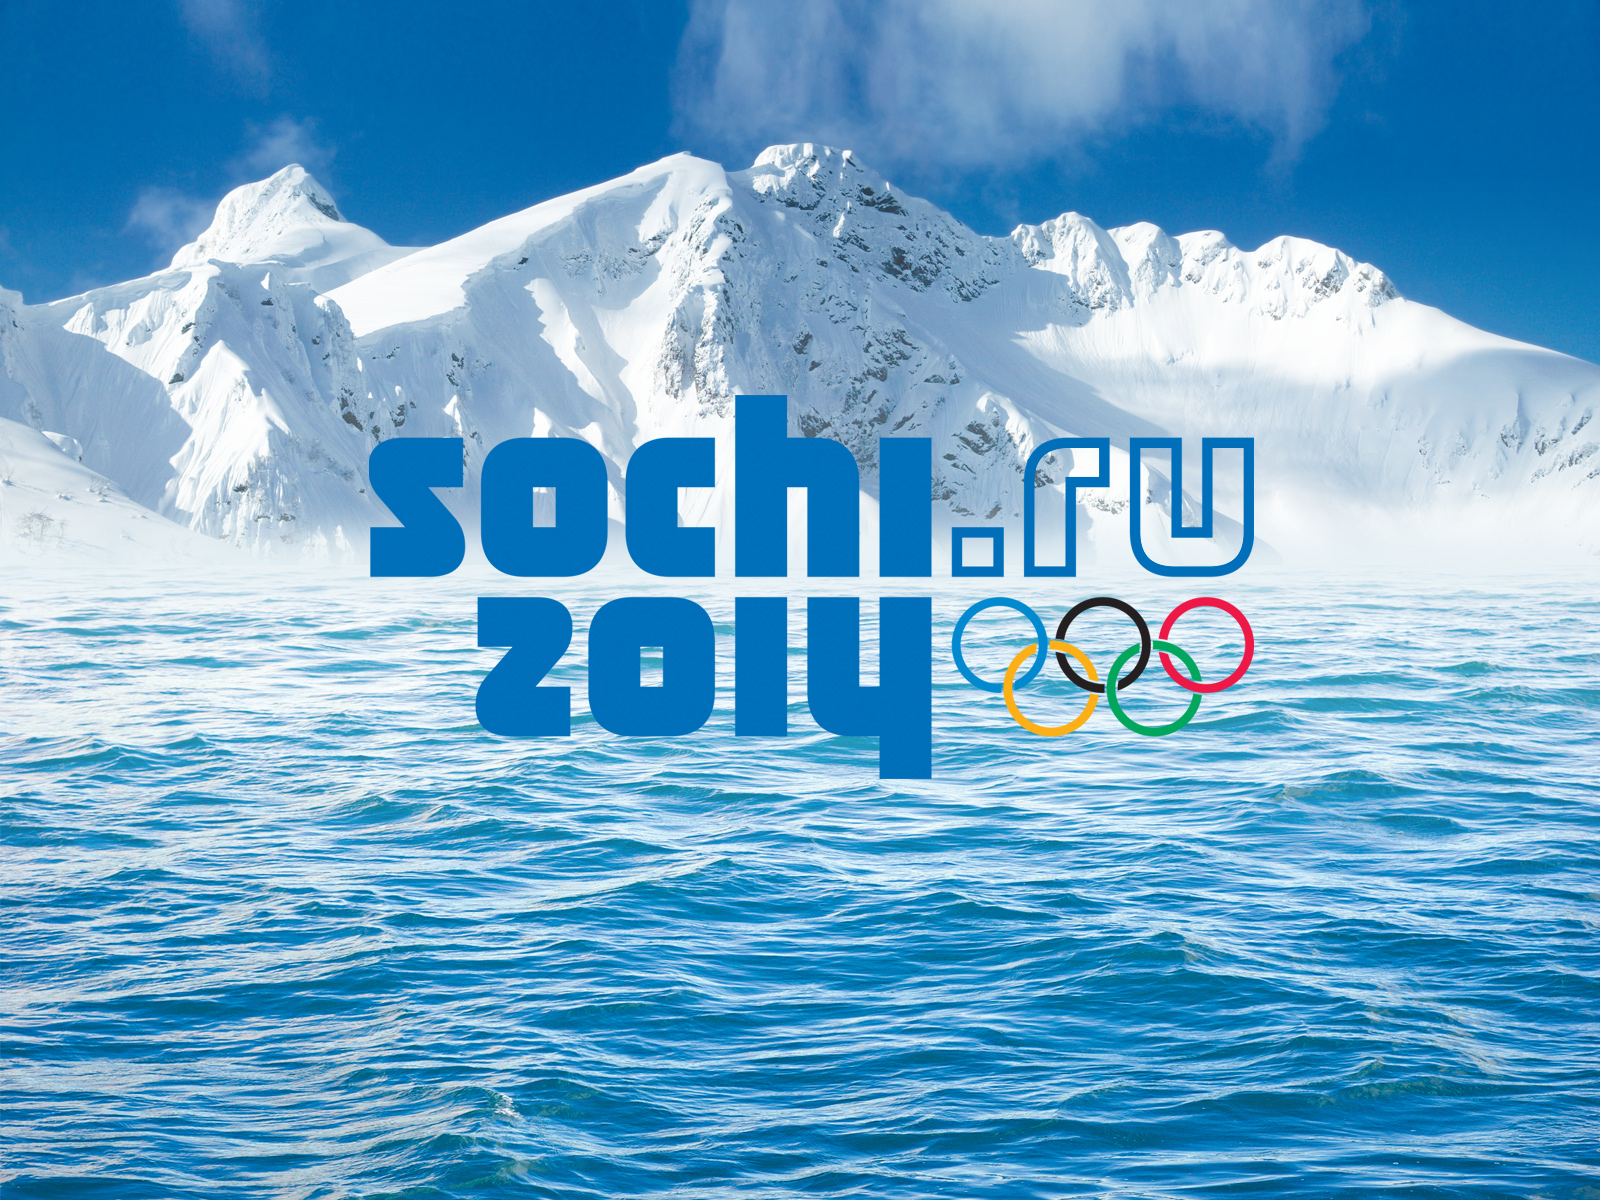 Olimpiadi Sochi 2014: Orari gare italiani con diretta TV e streaming oggi, programma 17 febbraio